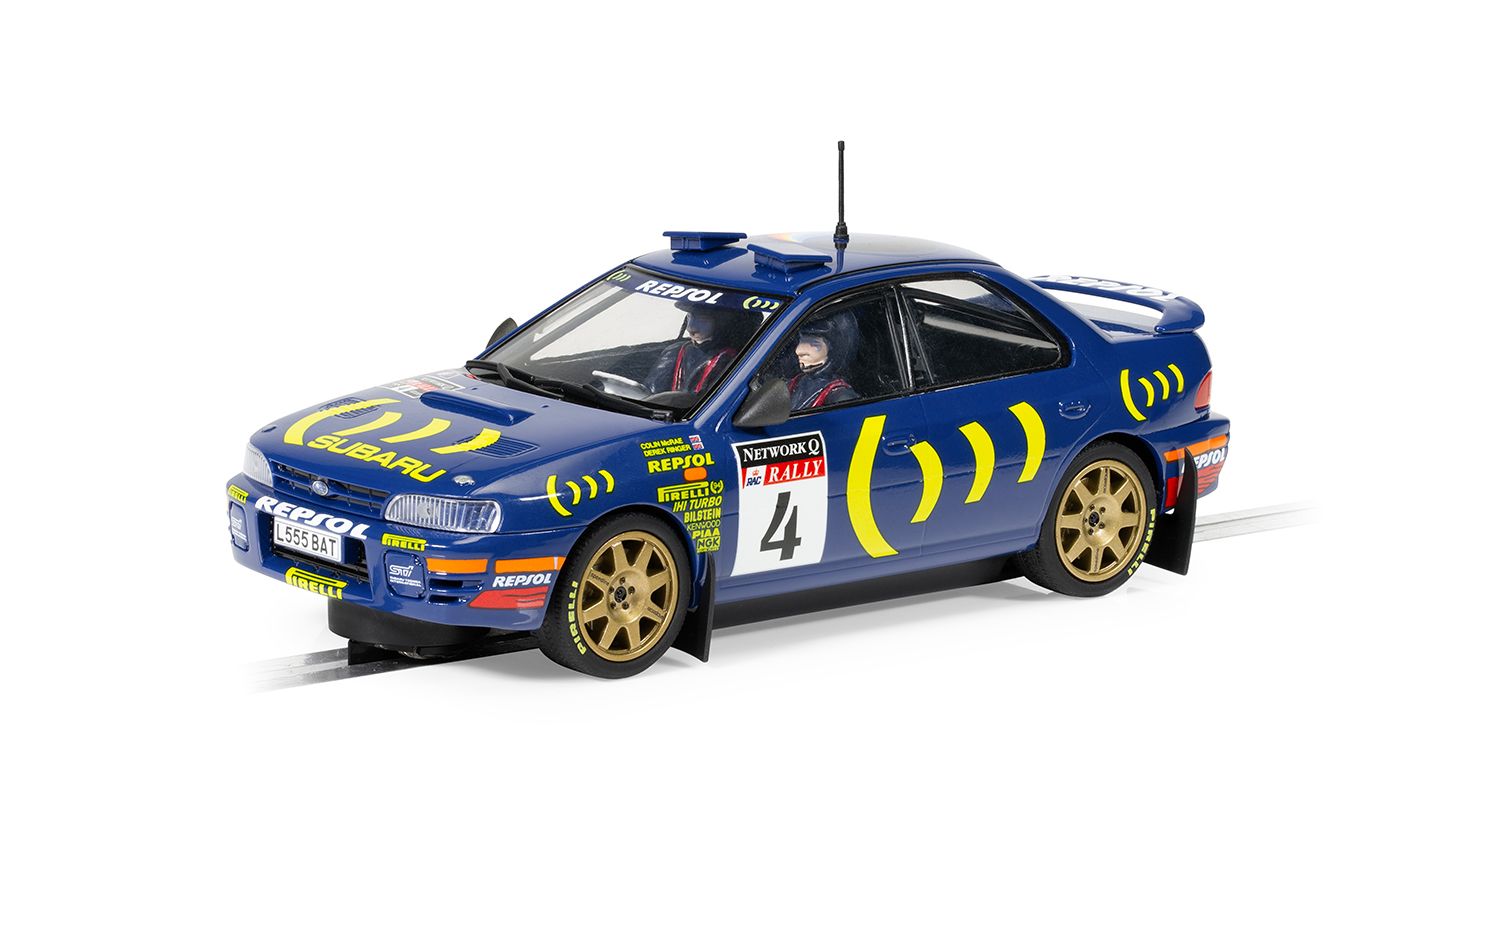 C4428 Subaru Impreza WRX Colin McRae 1995 World Champion Edition